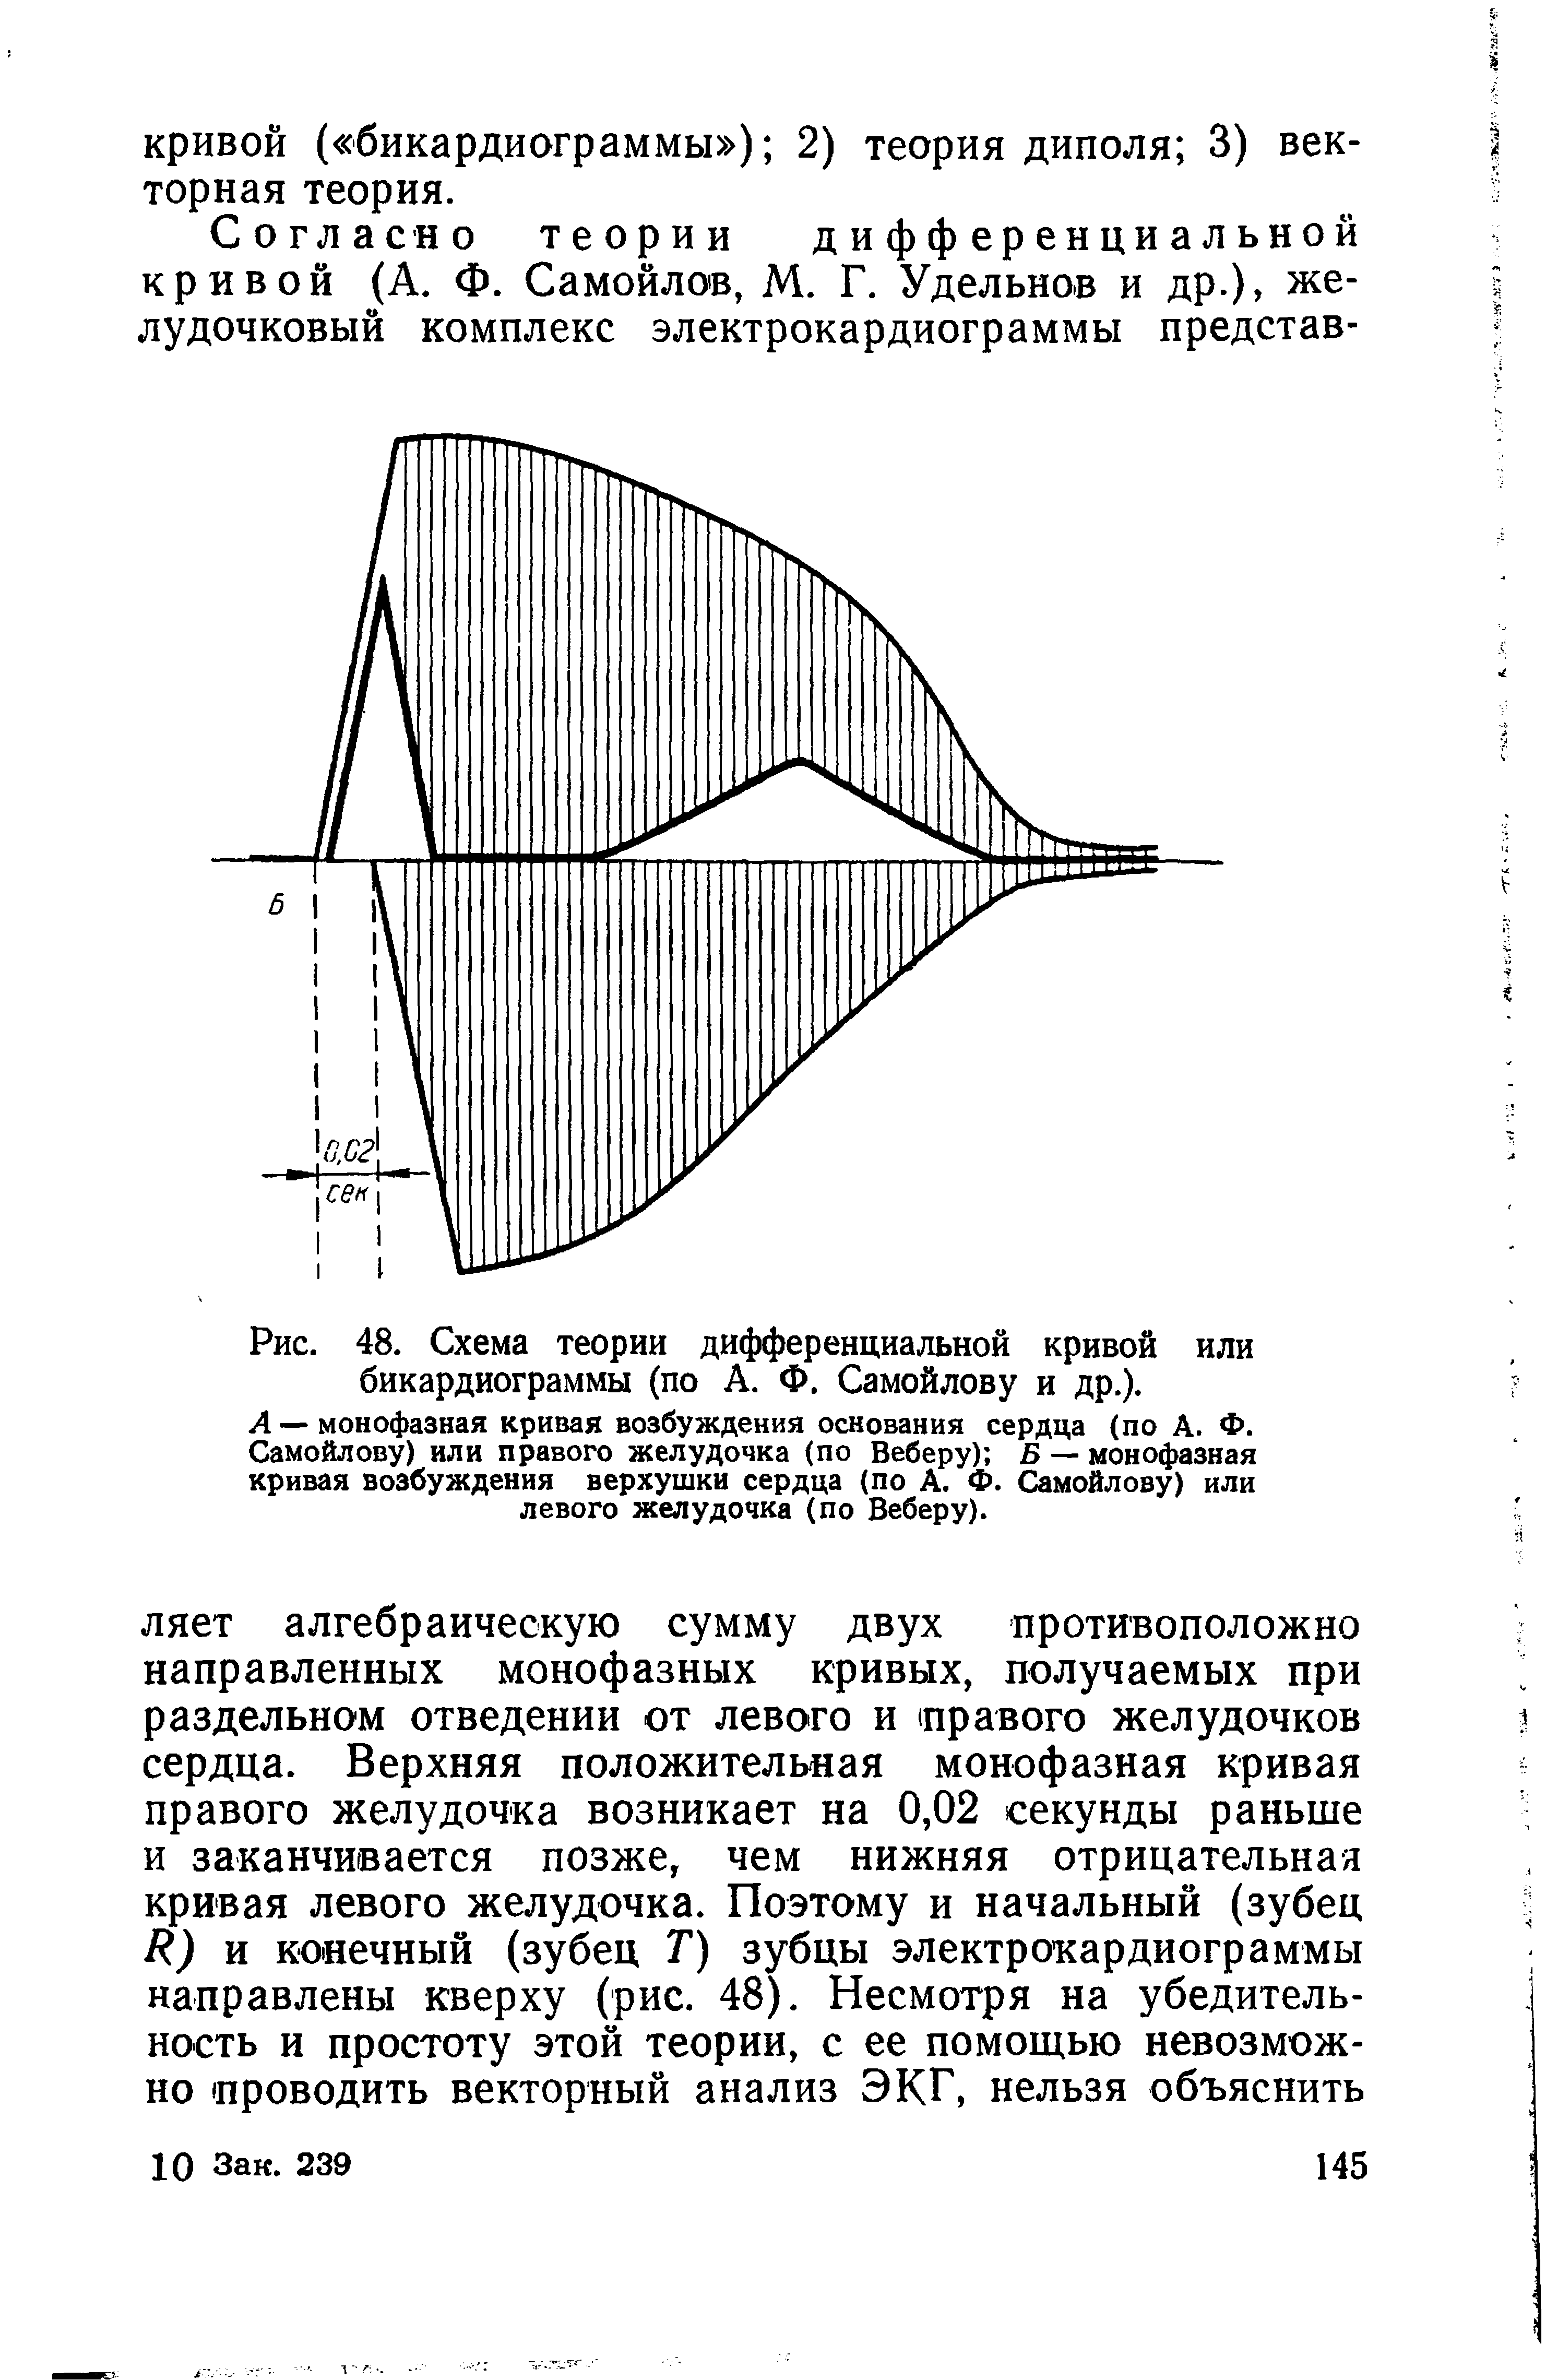 Рис. 48. Схема теории дифференциальной кривой или бикардиограммы (по А. Ф. Самойлову и др.).